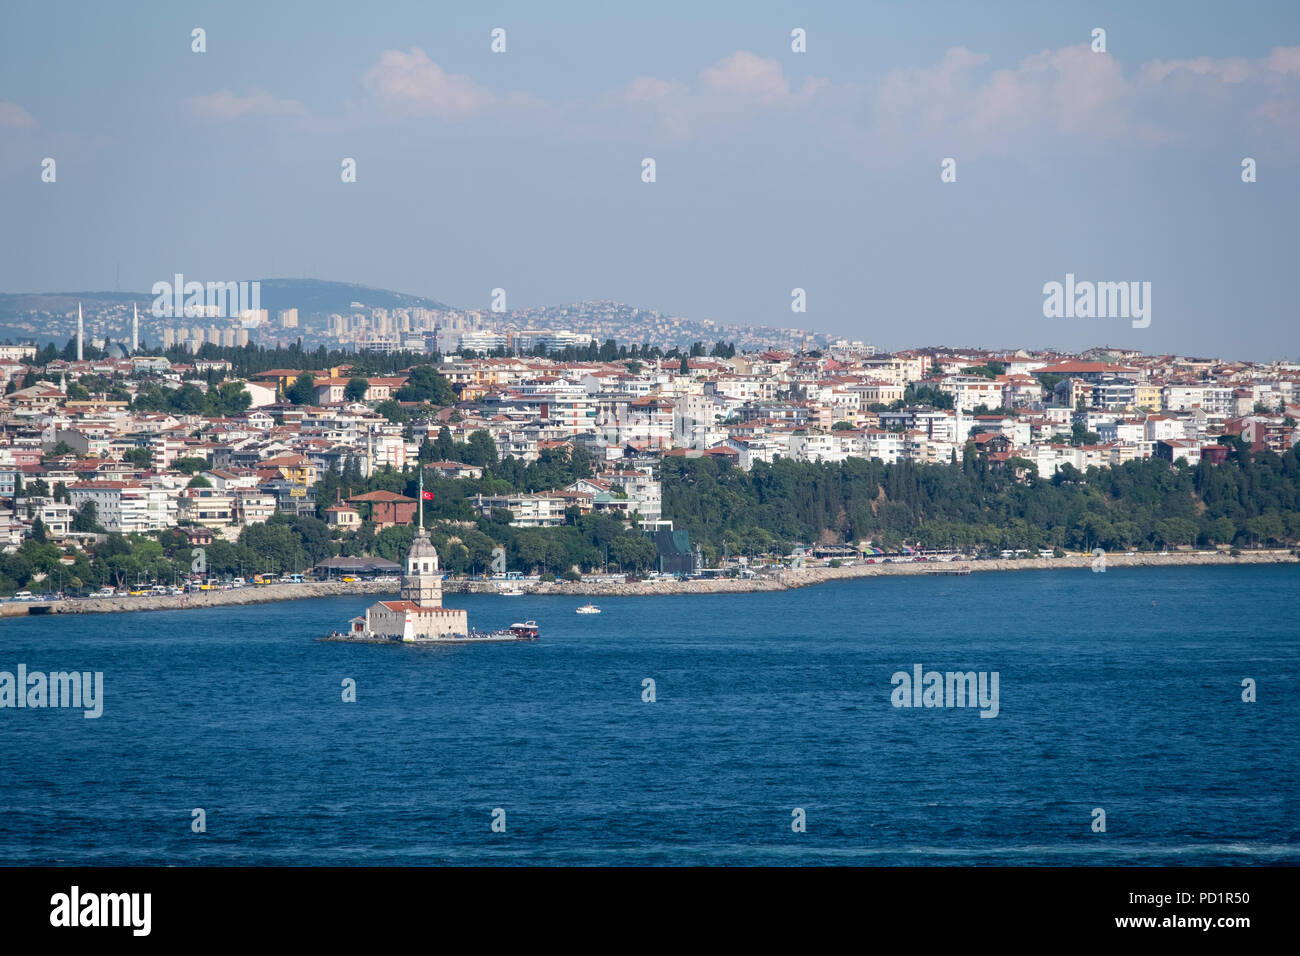 Der Maiden Tower in Istanbul, Türkei. Stockfoto